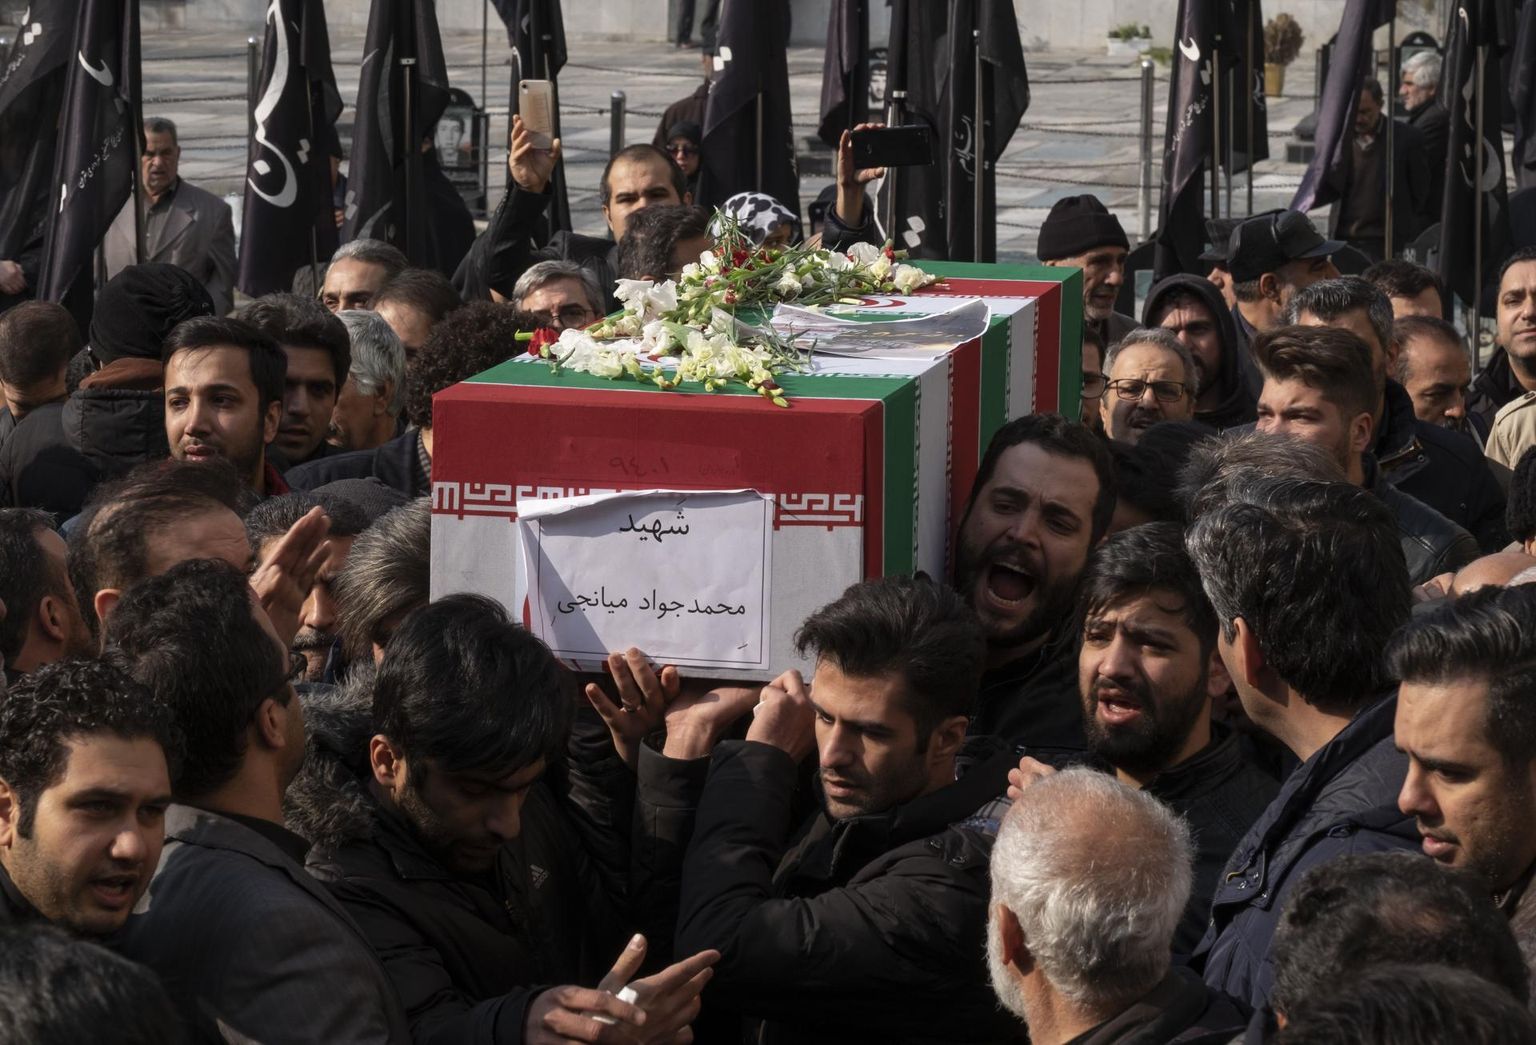 Ukraine International Airlinesi lennuõnnetuse ohvrite matusetalitus Teheranis paar nädalat tagasi.